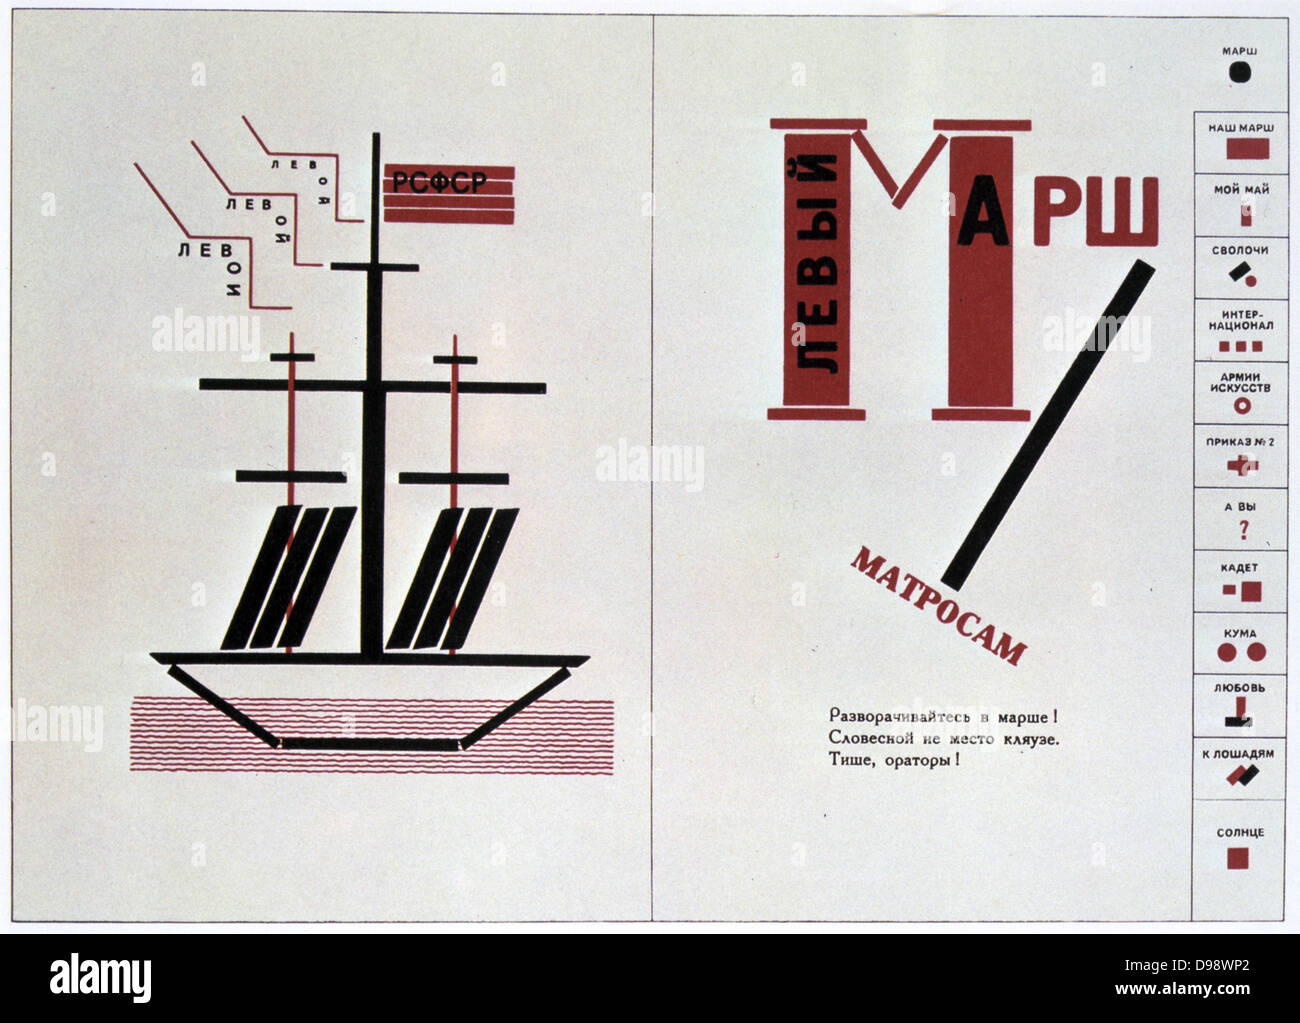 Illustration von Lazar Lissitzky für das Gedicht "Der Marsch der Linken' durch die Wladimir Majakowski, 1923. Russland UDSSR Kommunismus Kommunistische geometrischen Abstrakten Stockfoto